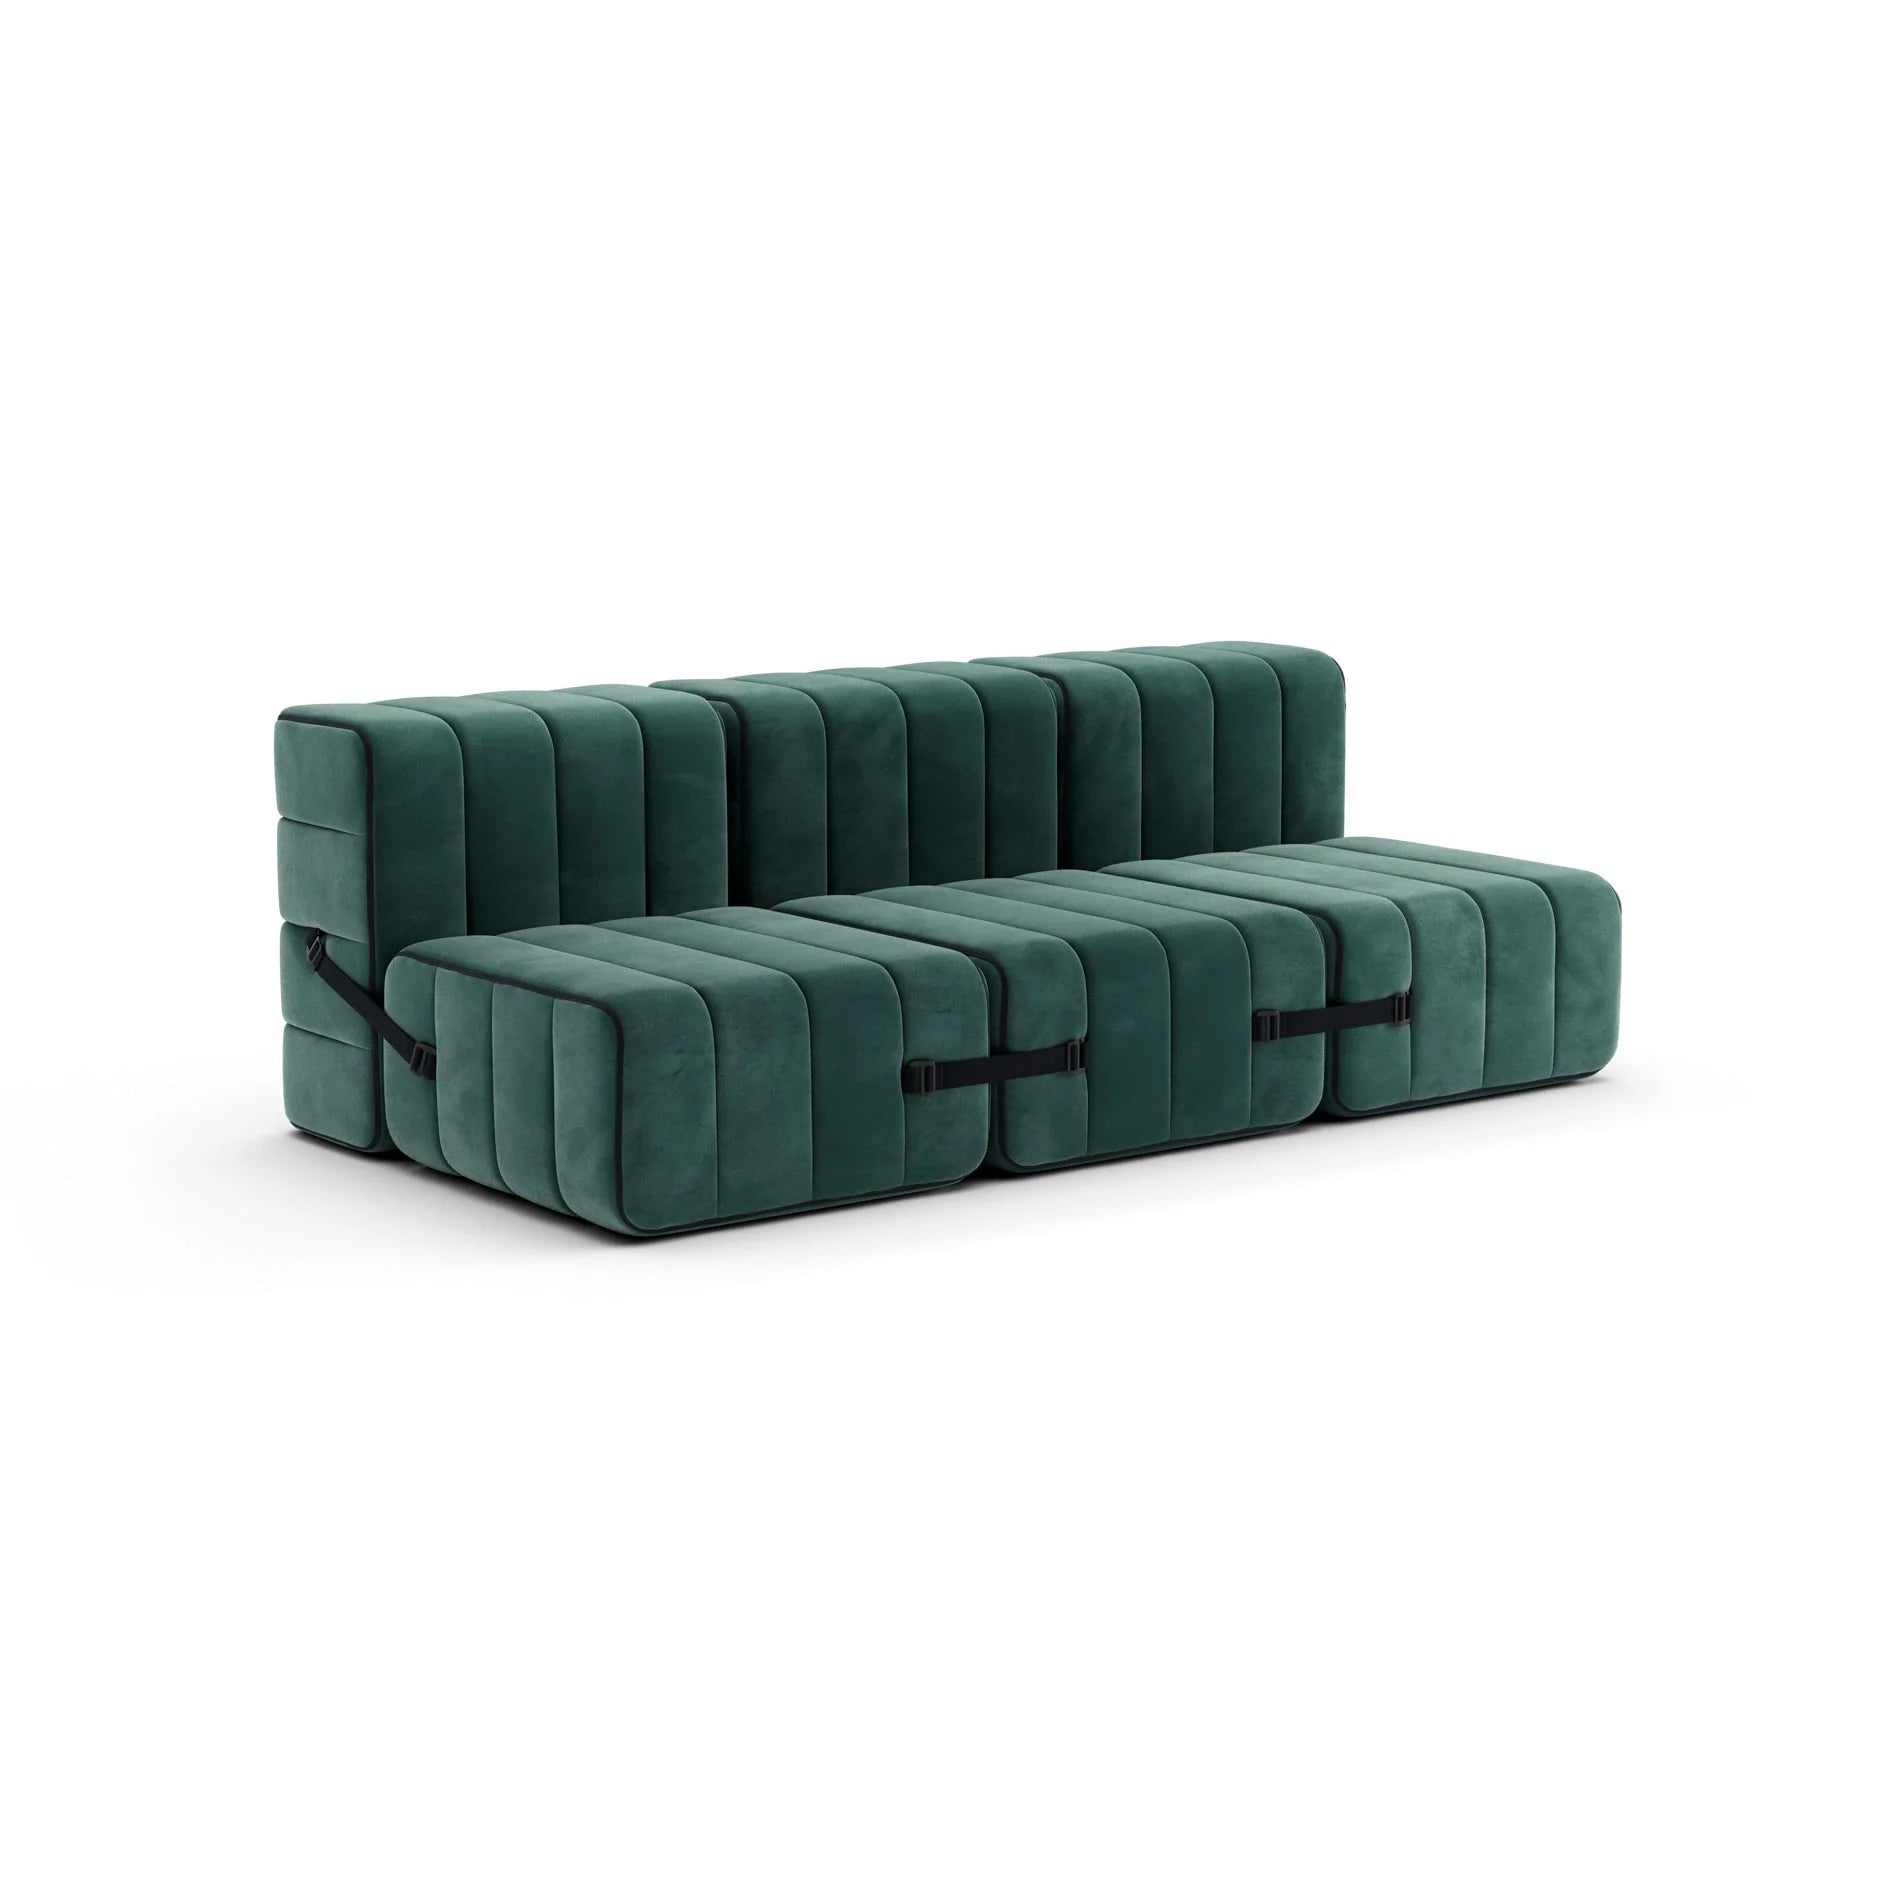 Modular sofa system Curt - Barcelona Serpentine